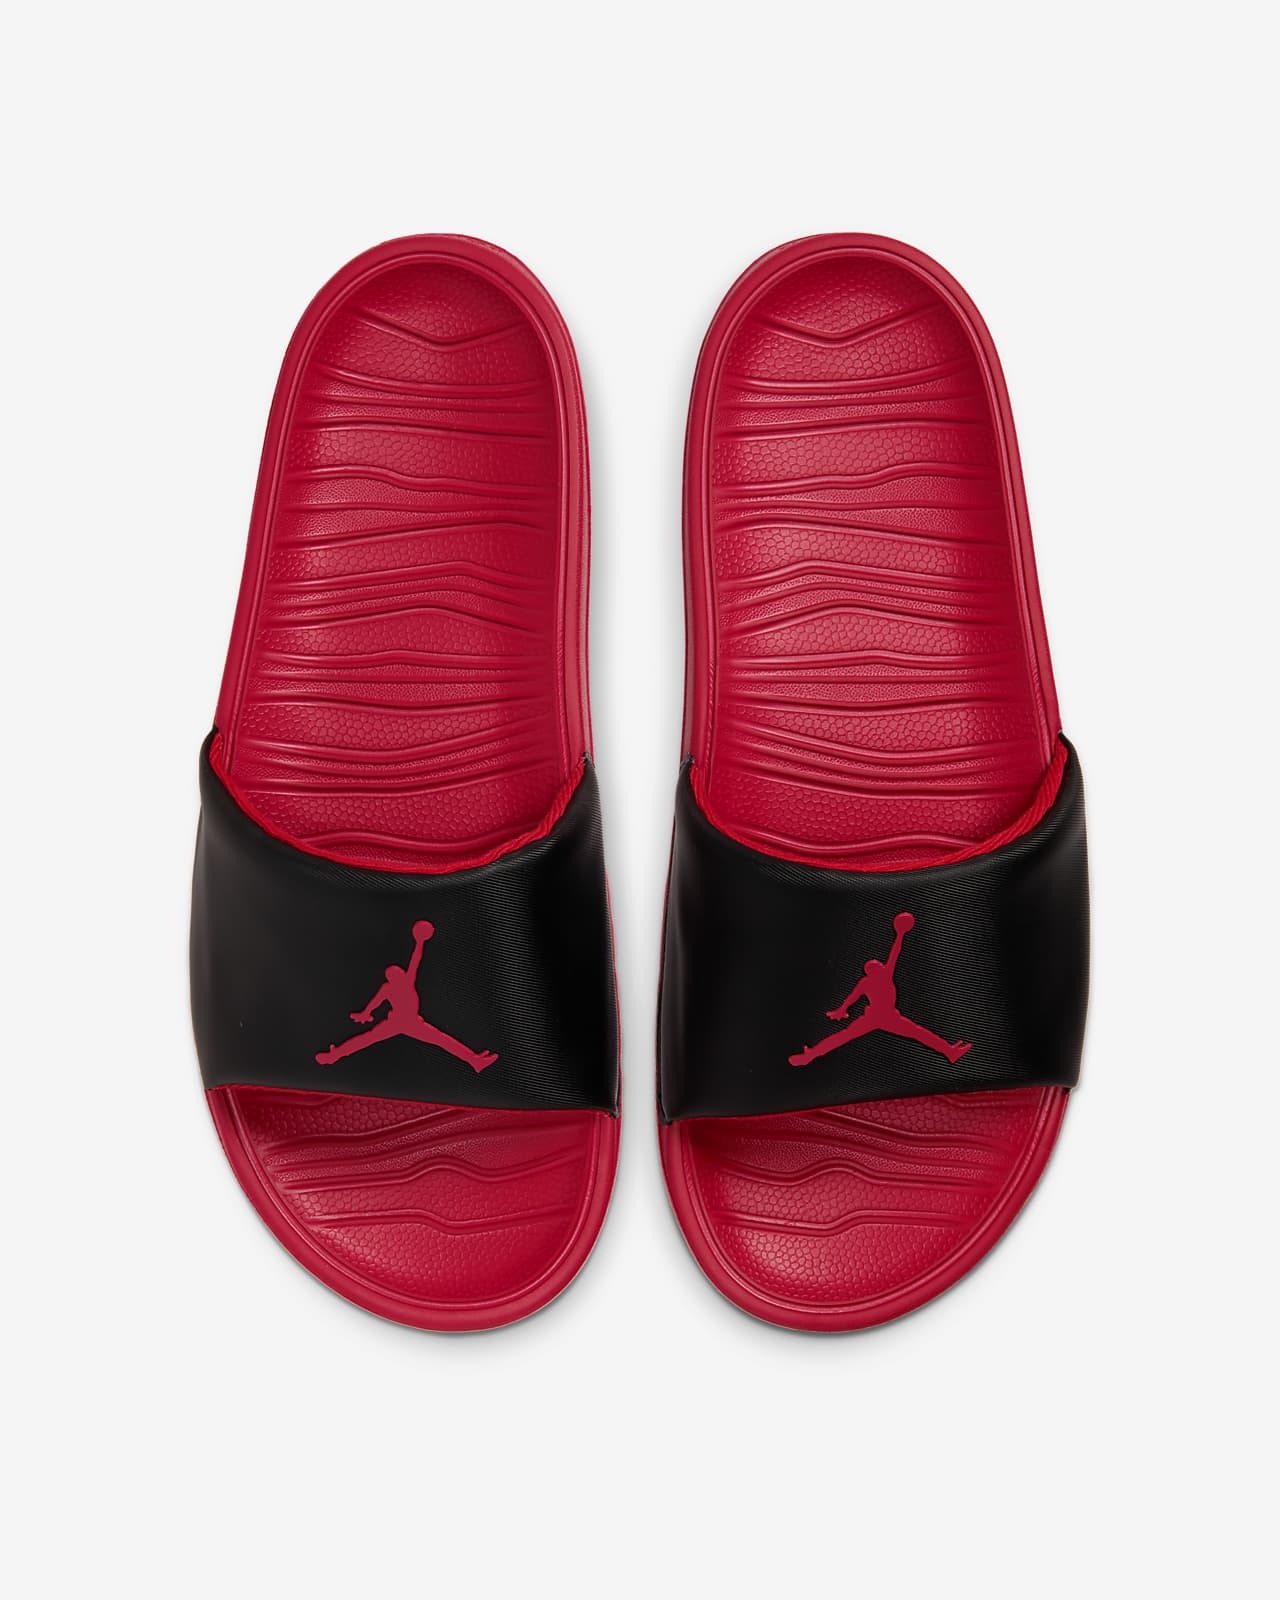 Jordan Break Slide. Nike MA